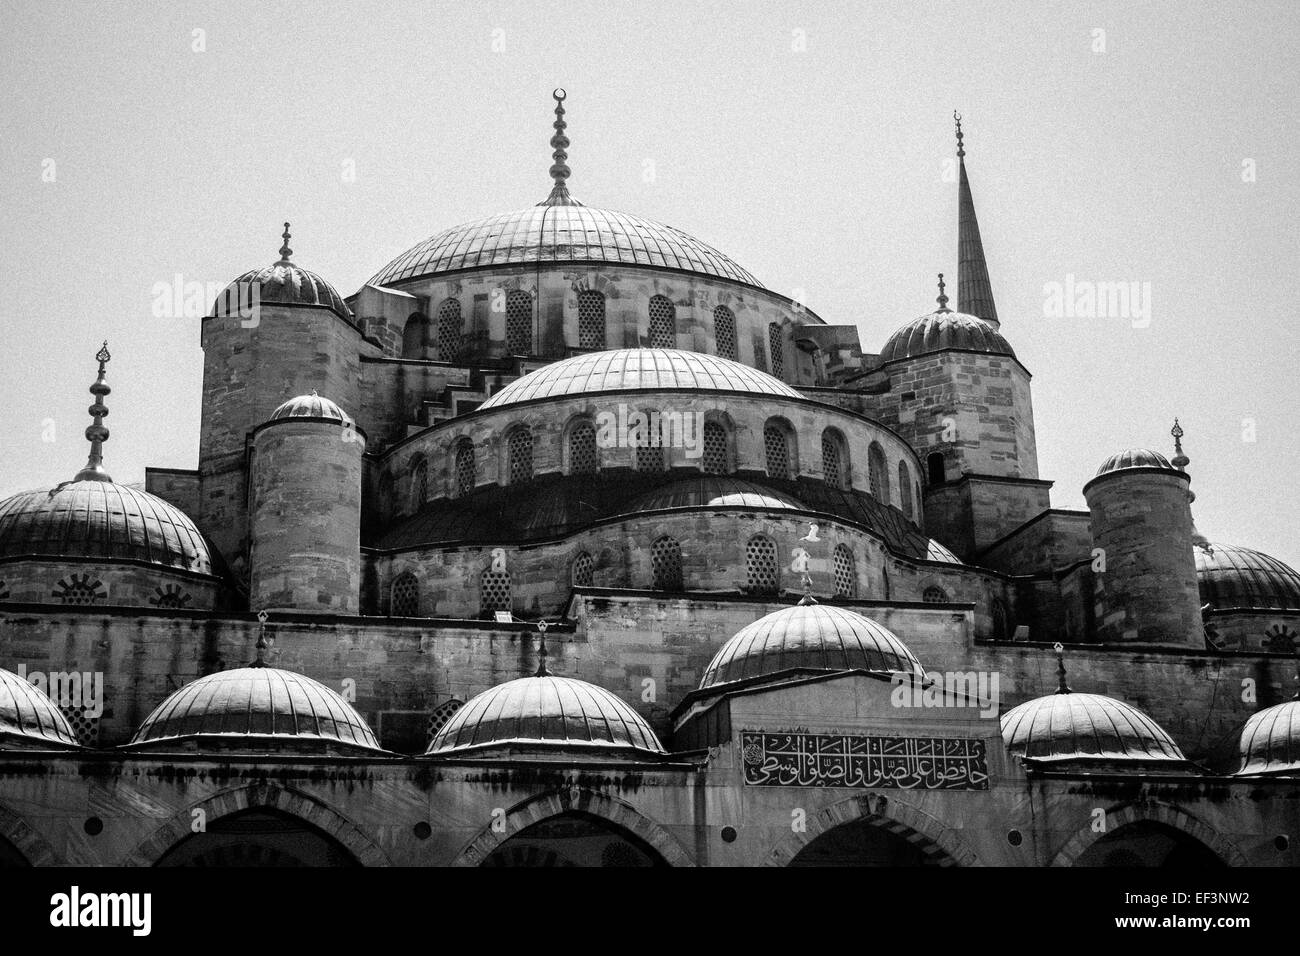 La Mosquée Sultan Ahmed / Mosquée bleue. Istanbul, Turquie Banque D'Images